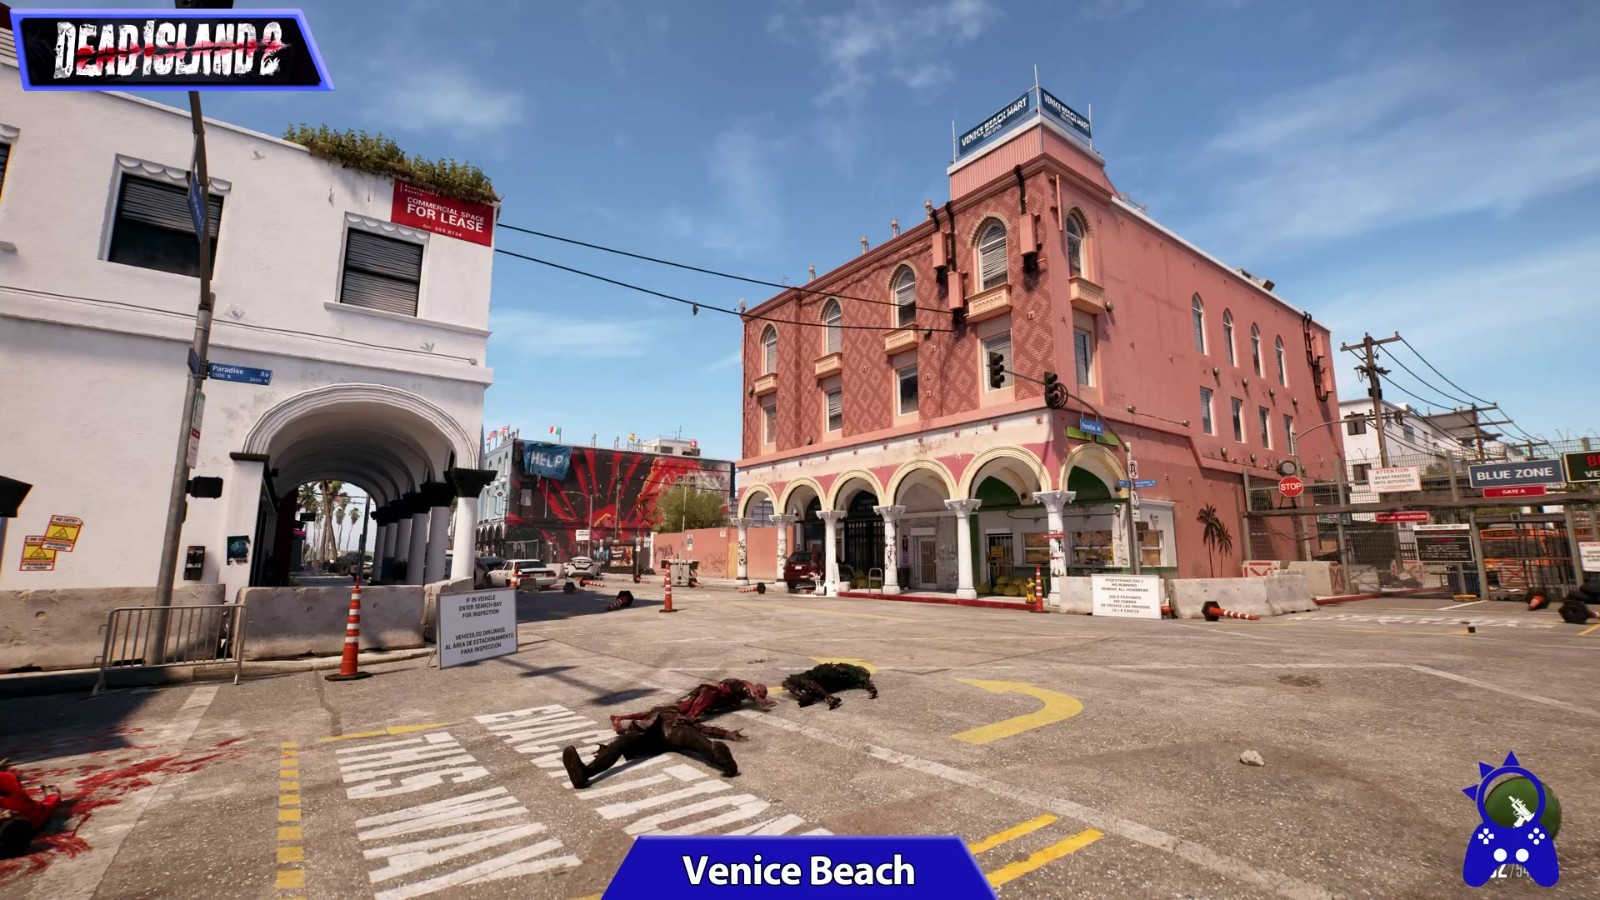 《死亡岛2》游戏环境与现实环境视频对比